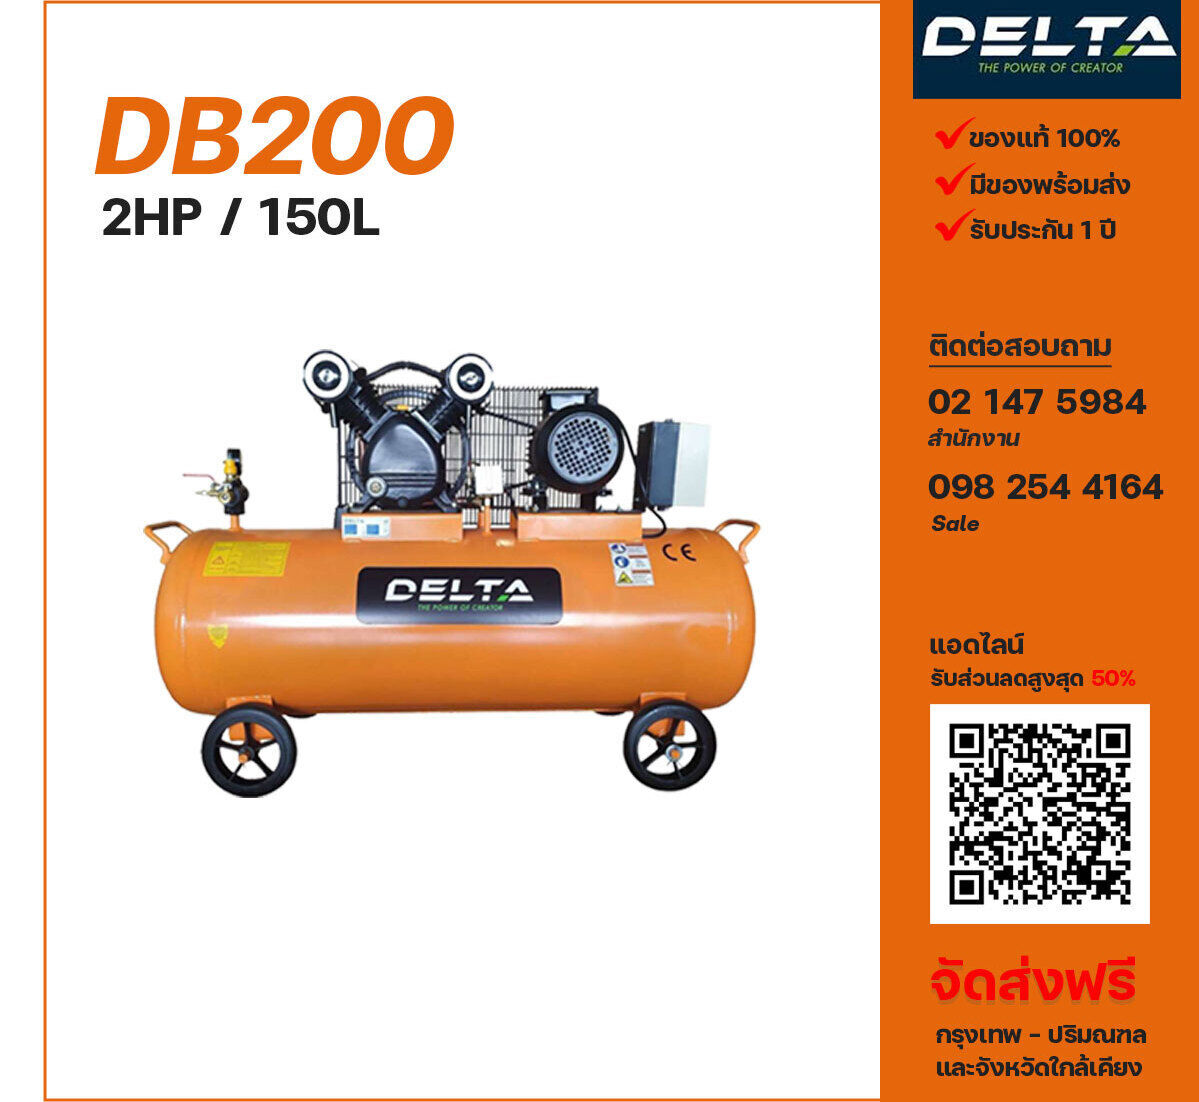 ปั๊มลมเดลต้า DELTA DB200 220V/380V ปั๊มลมลูกสูบ ขนาด 2 สูบ 2 แรงม้า 150 ลิตร DELTA พร้อมมอเตอร์ ไฟ 220V/380V ส่งฟรี กรุงเทพฯ-ปริมณฑล รับประกัน 1 ปี